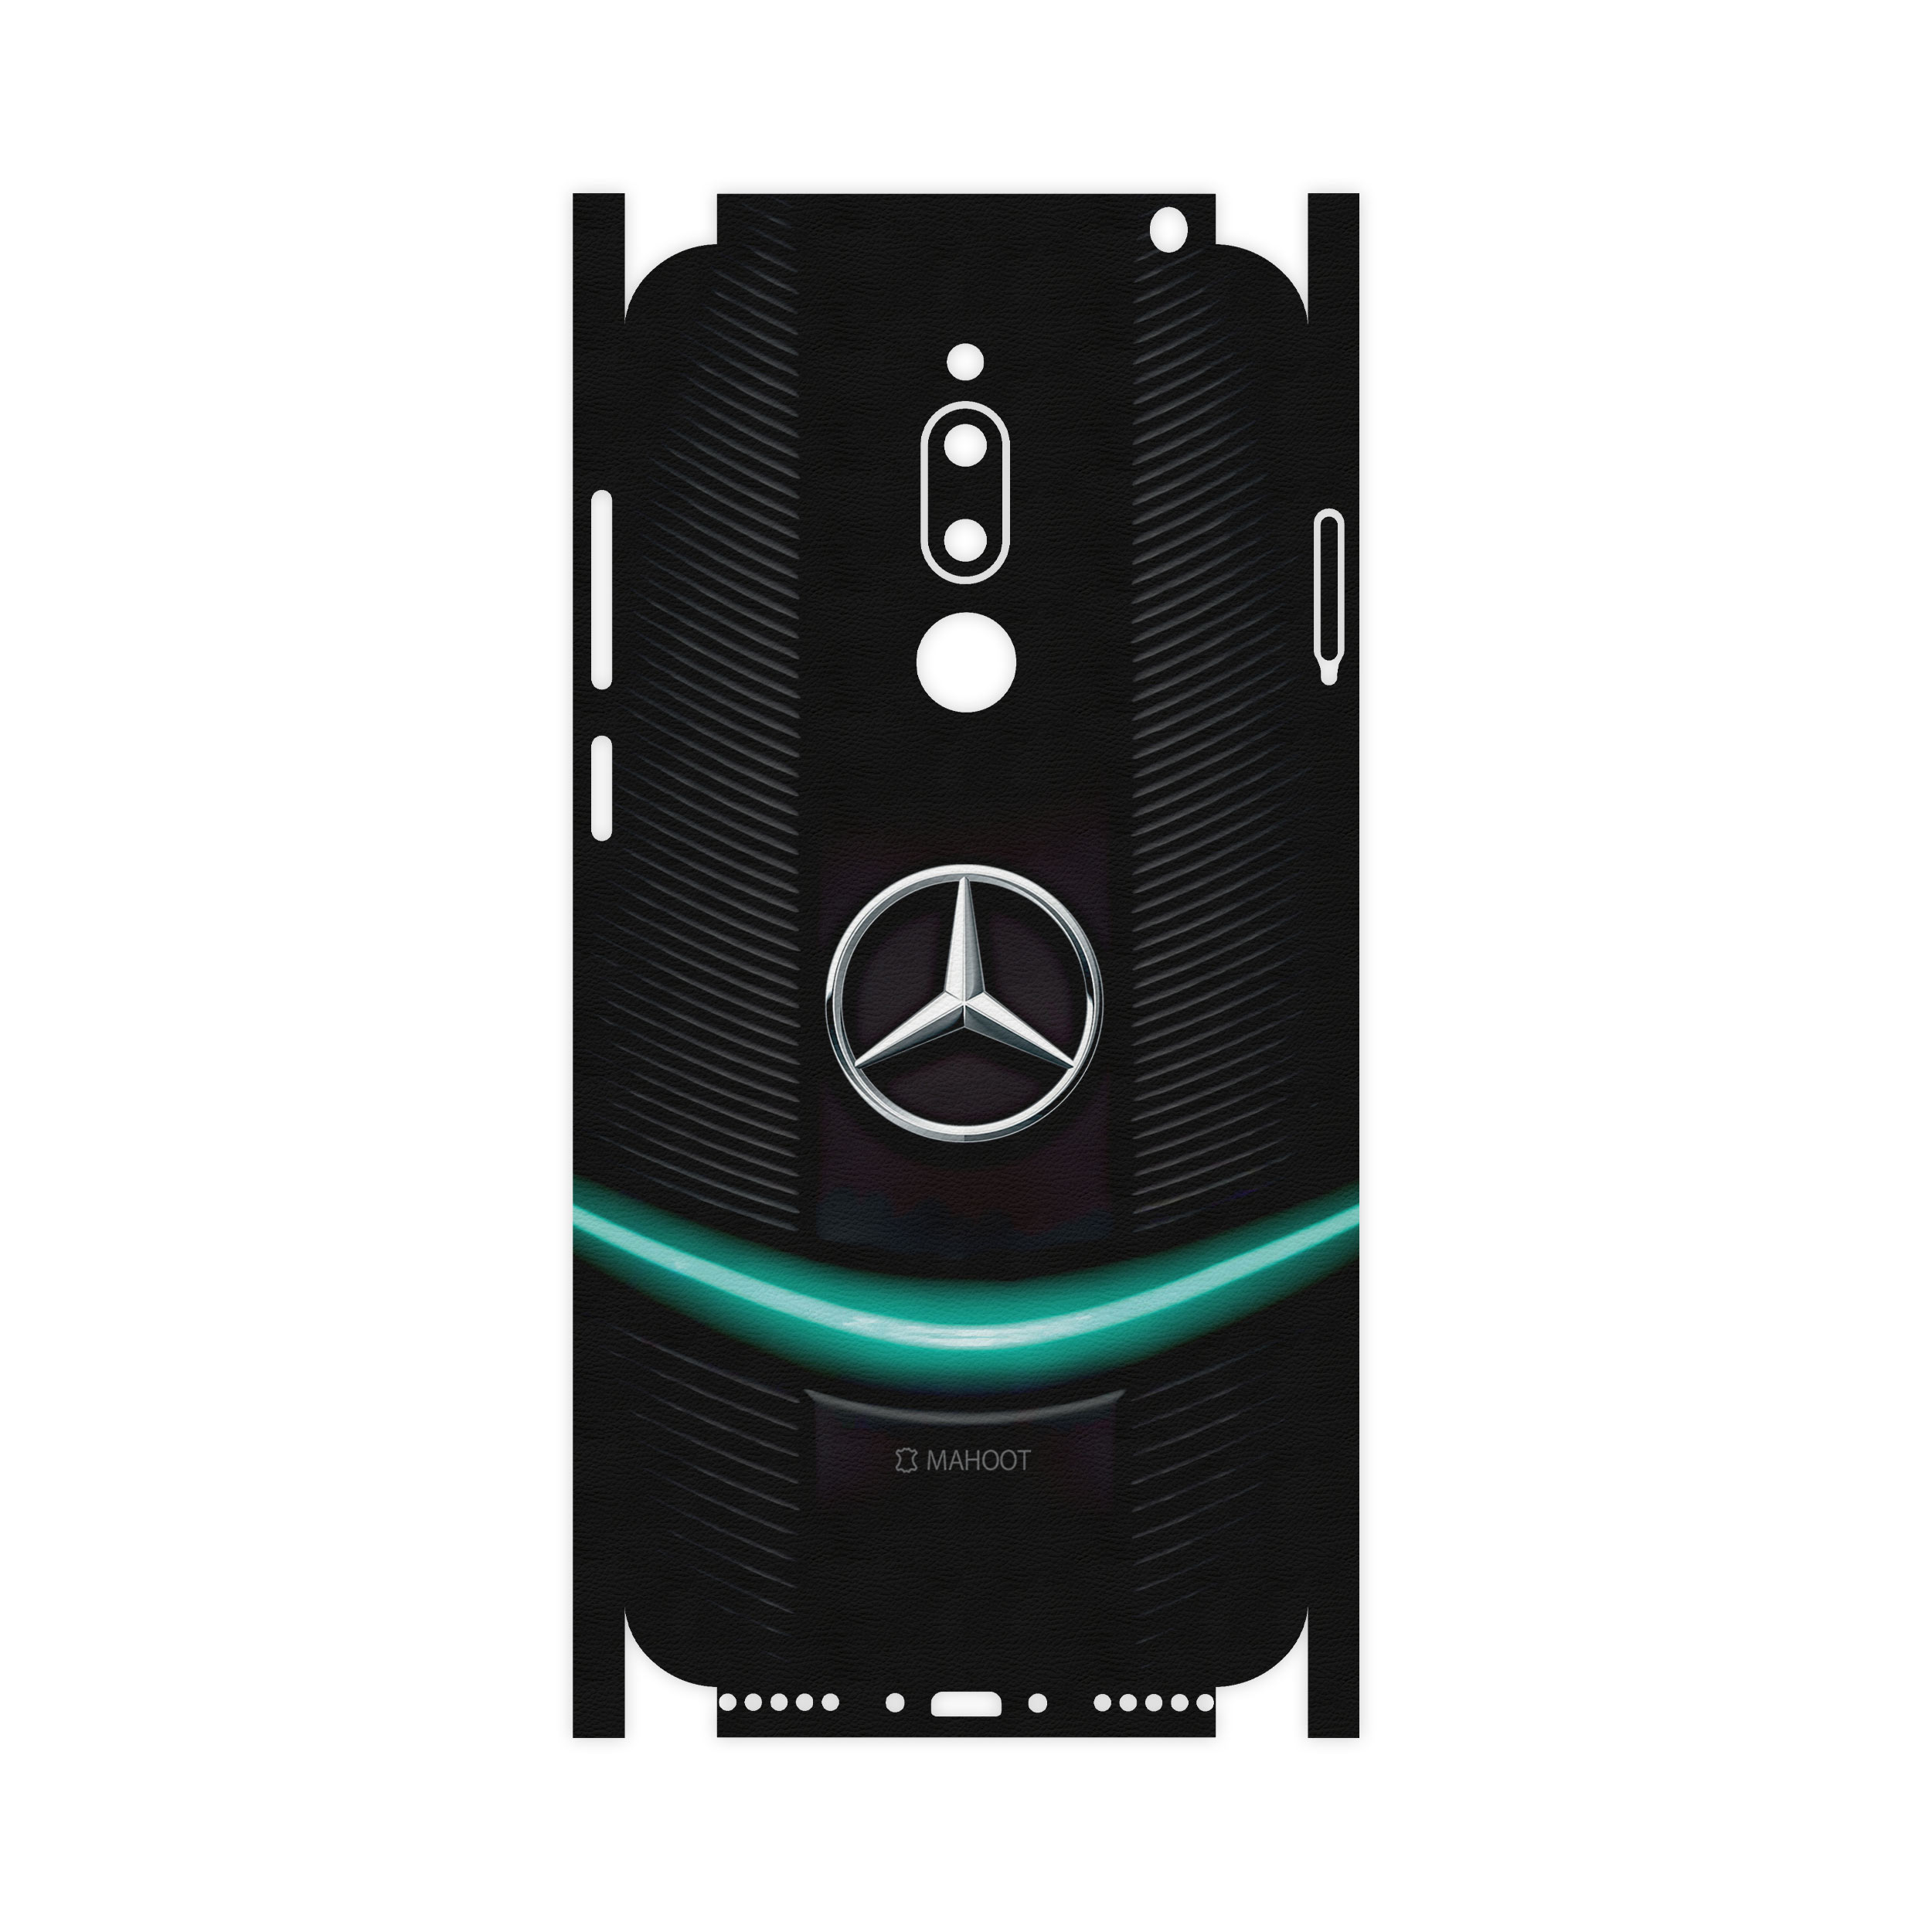 برچسب پوششی ماهوت مدل Mercedes-Benz-FullSkin  مناسب برای گوشی موبایل میزو M6T